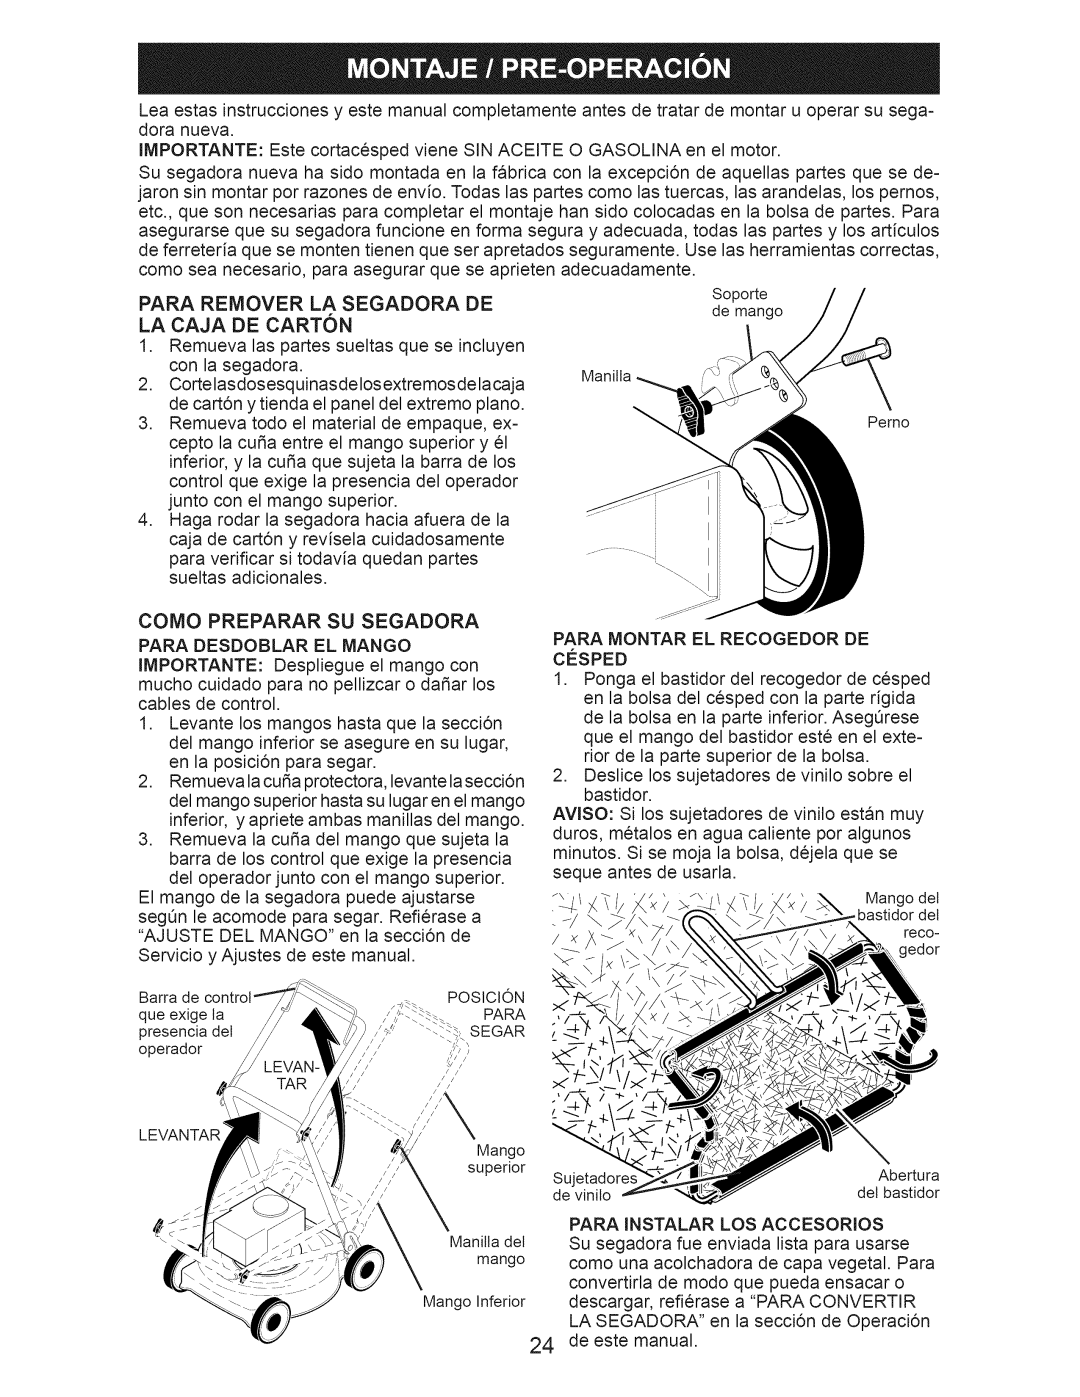 Craftsman 917.376392 manual Como Preparar Su Segadora 